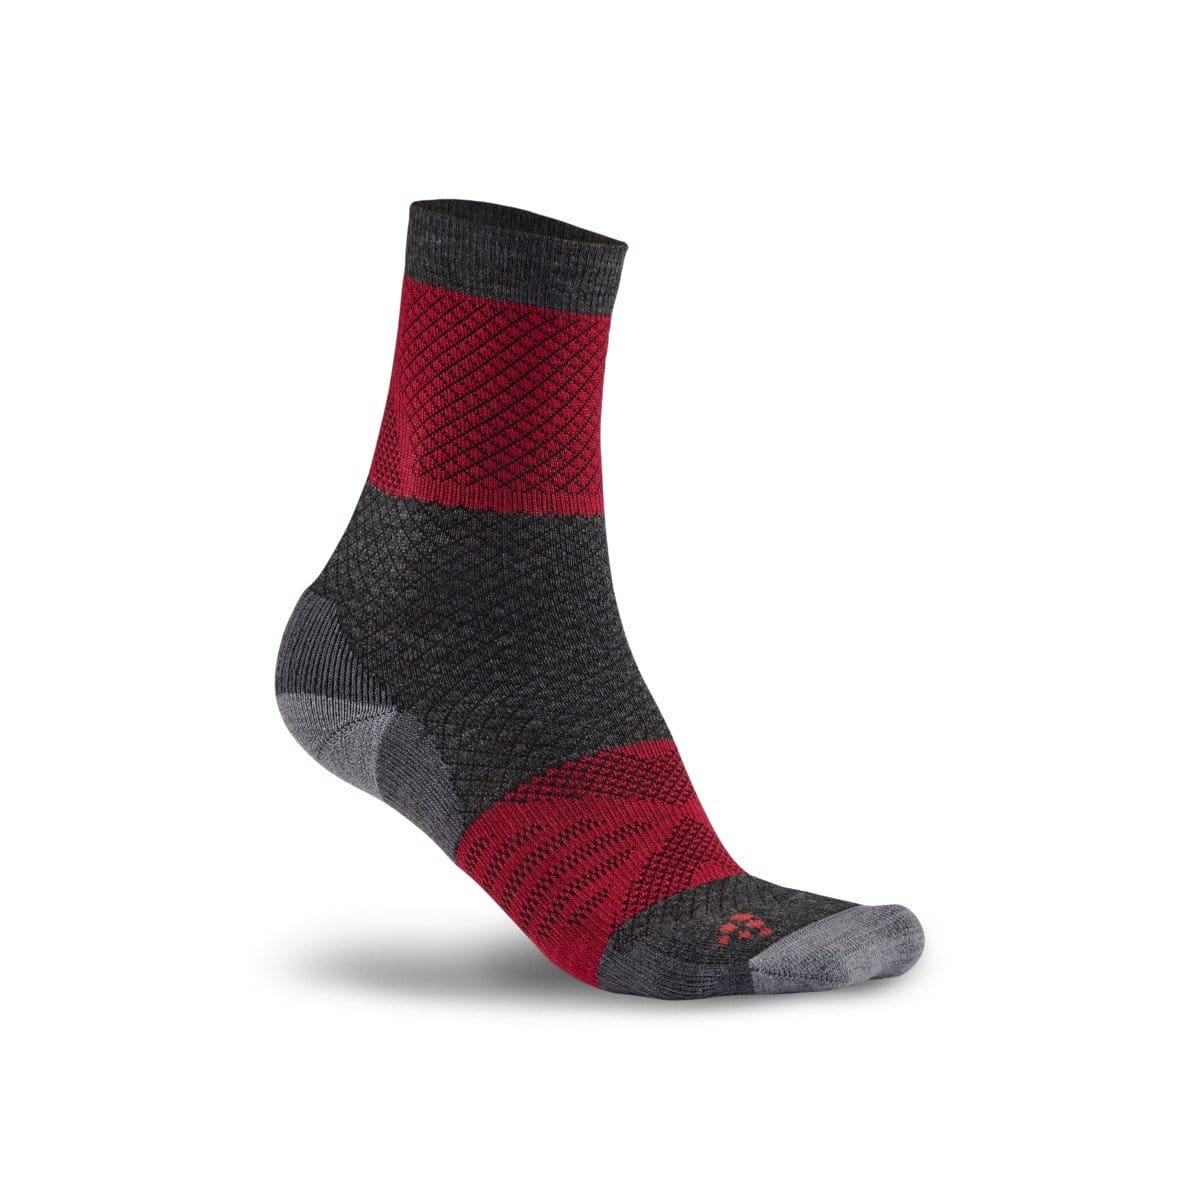 Unisex sporotvní ponožky Craft Ponožky XC Warm červená s černou